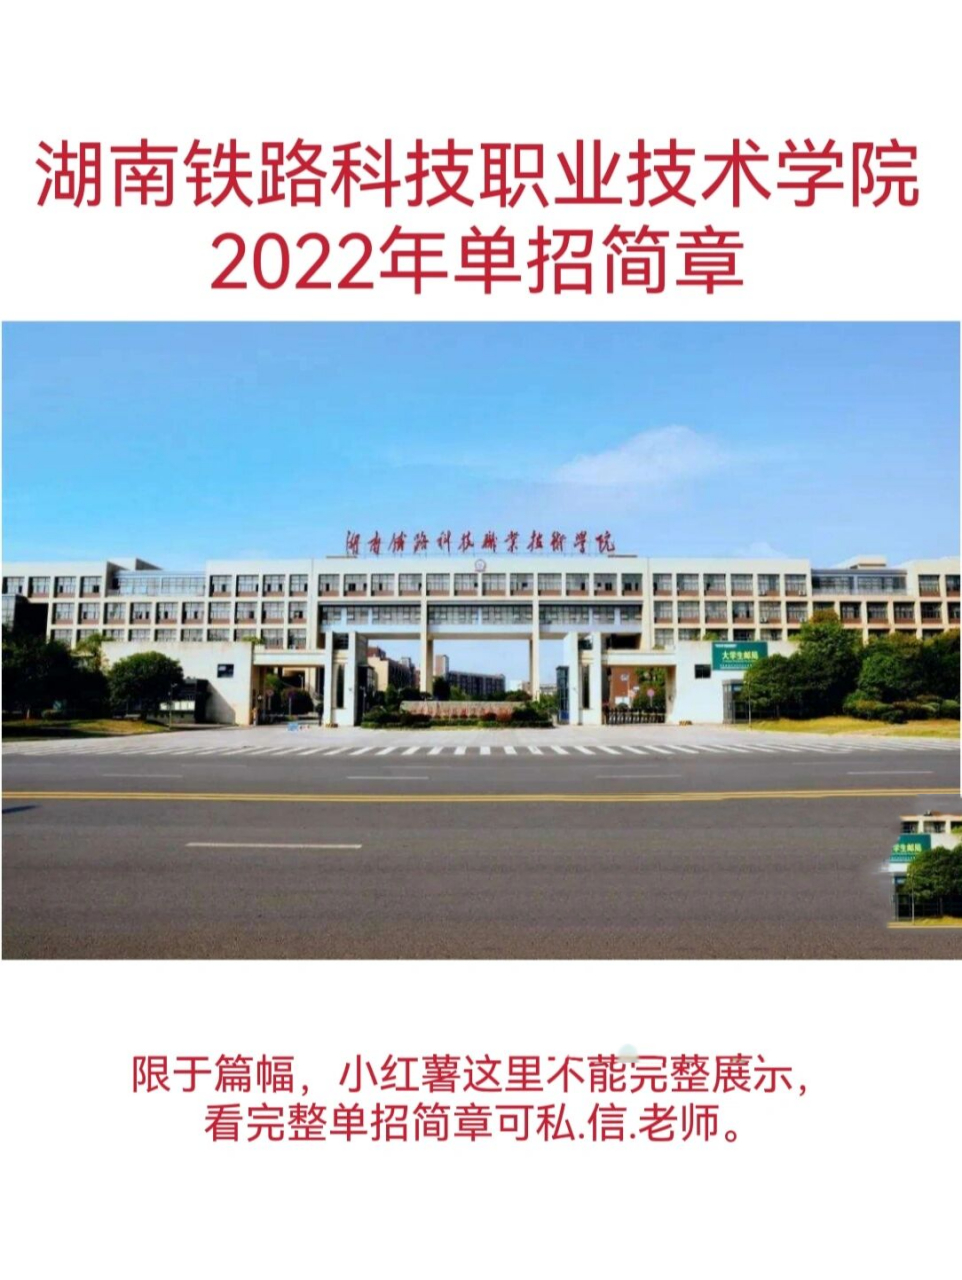 湖南铁道职业技术学校图片